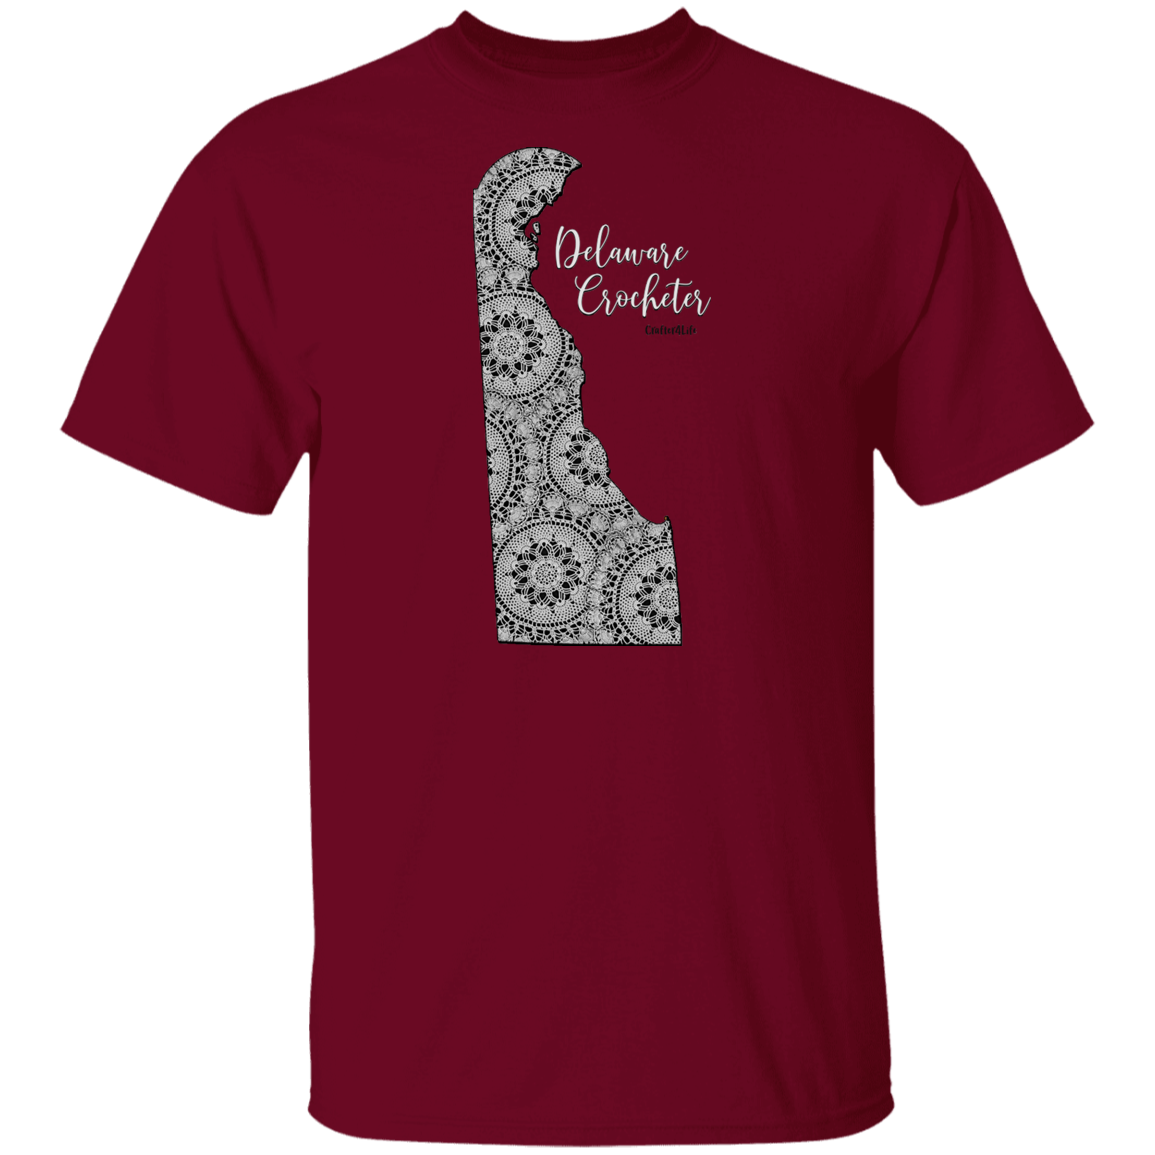 Delaware Crocheter T-Shirt